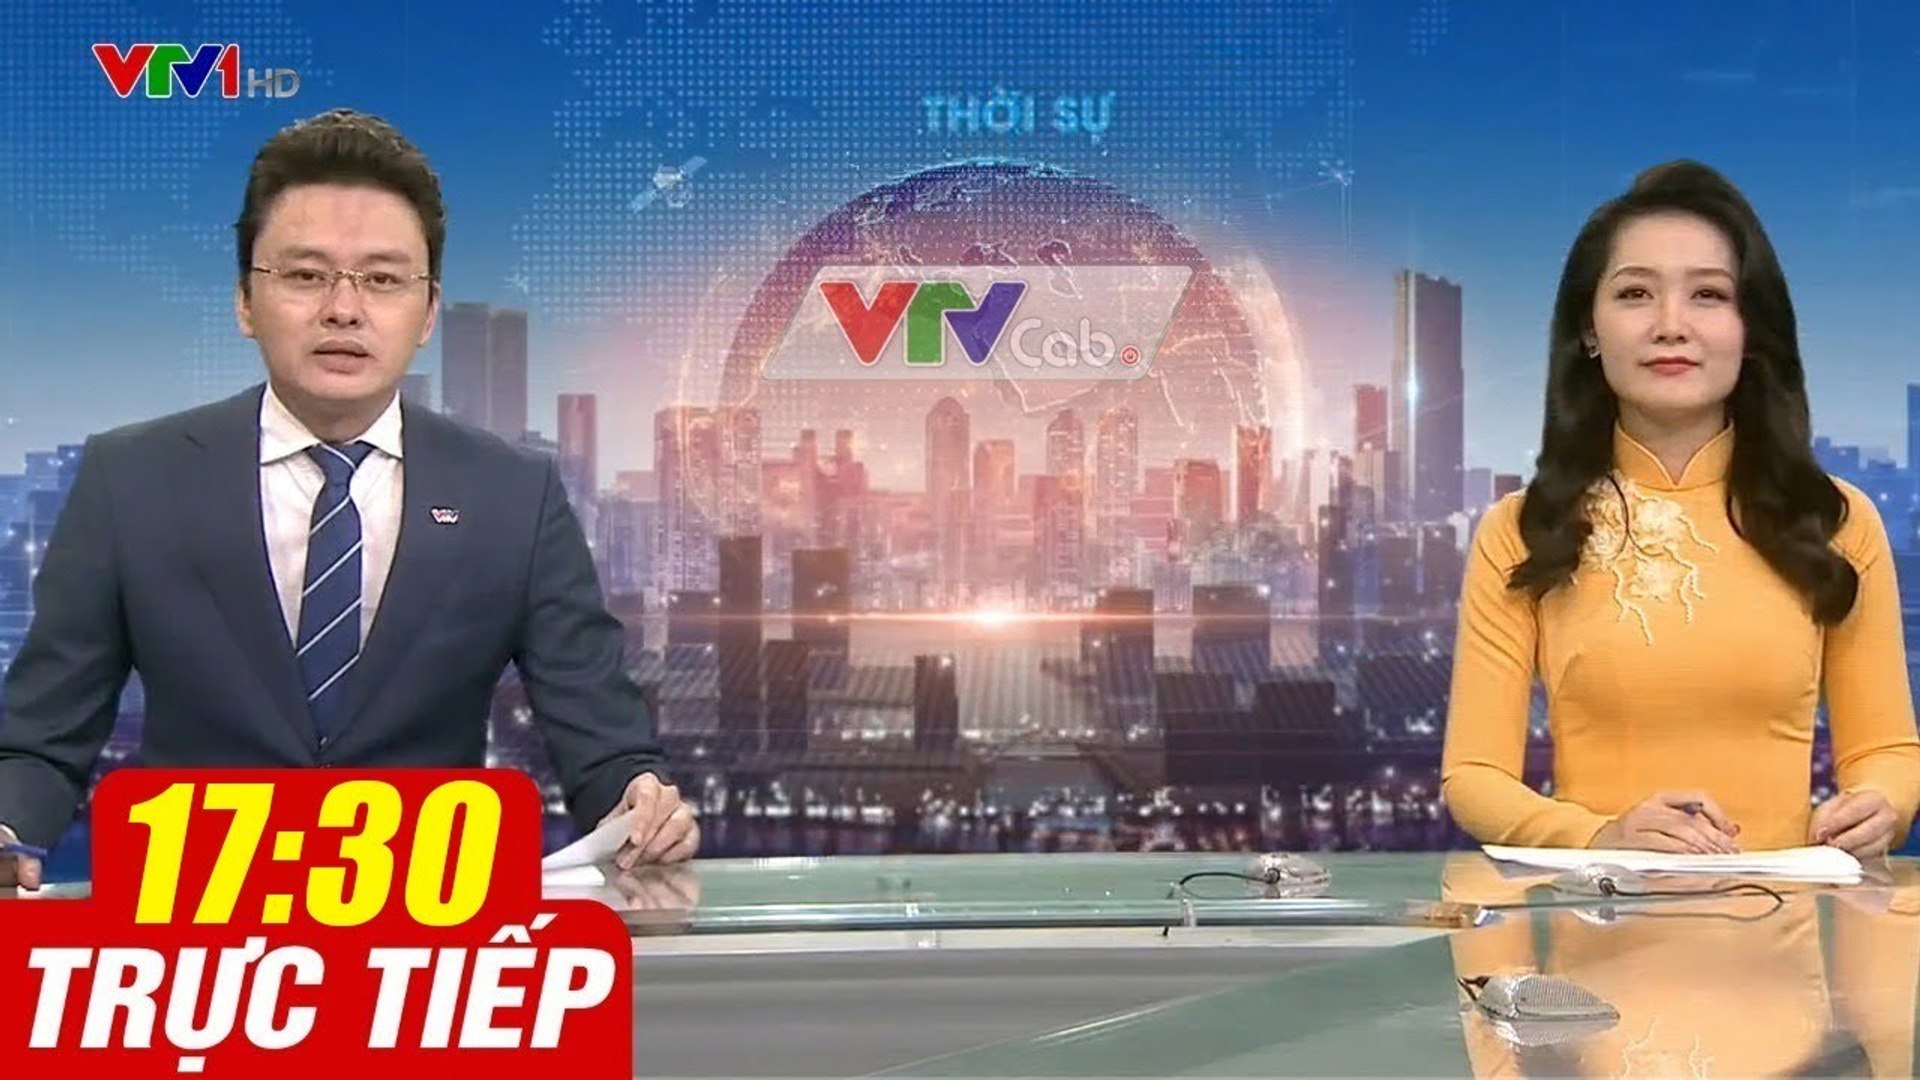 Trực Tiếp VIỆT NAM HÔM NAY 17h30 ngày 29.08.2020  Tin tức thời sự VTV1 mới nhất hôm nay